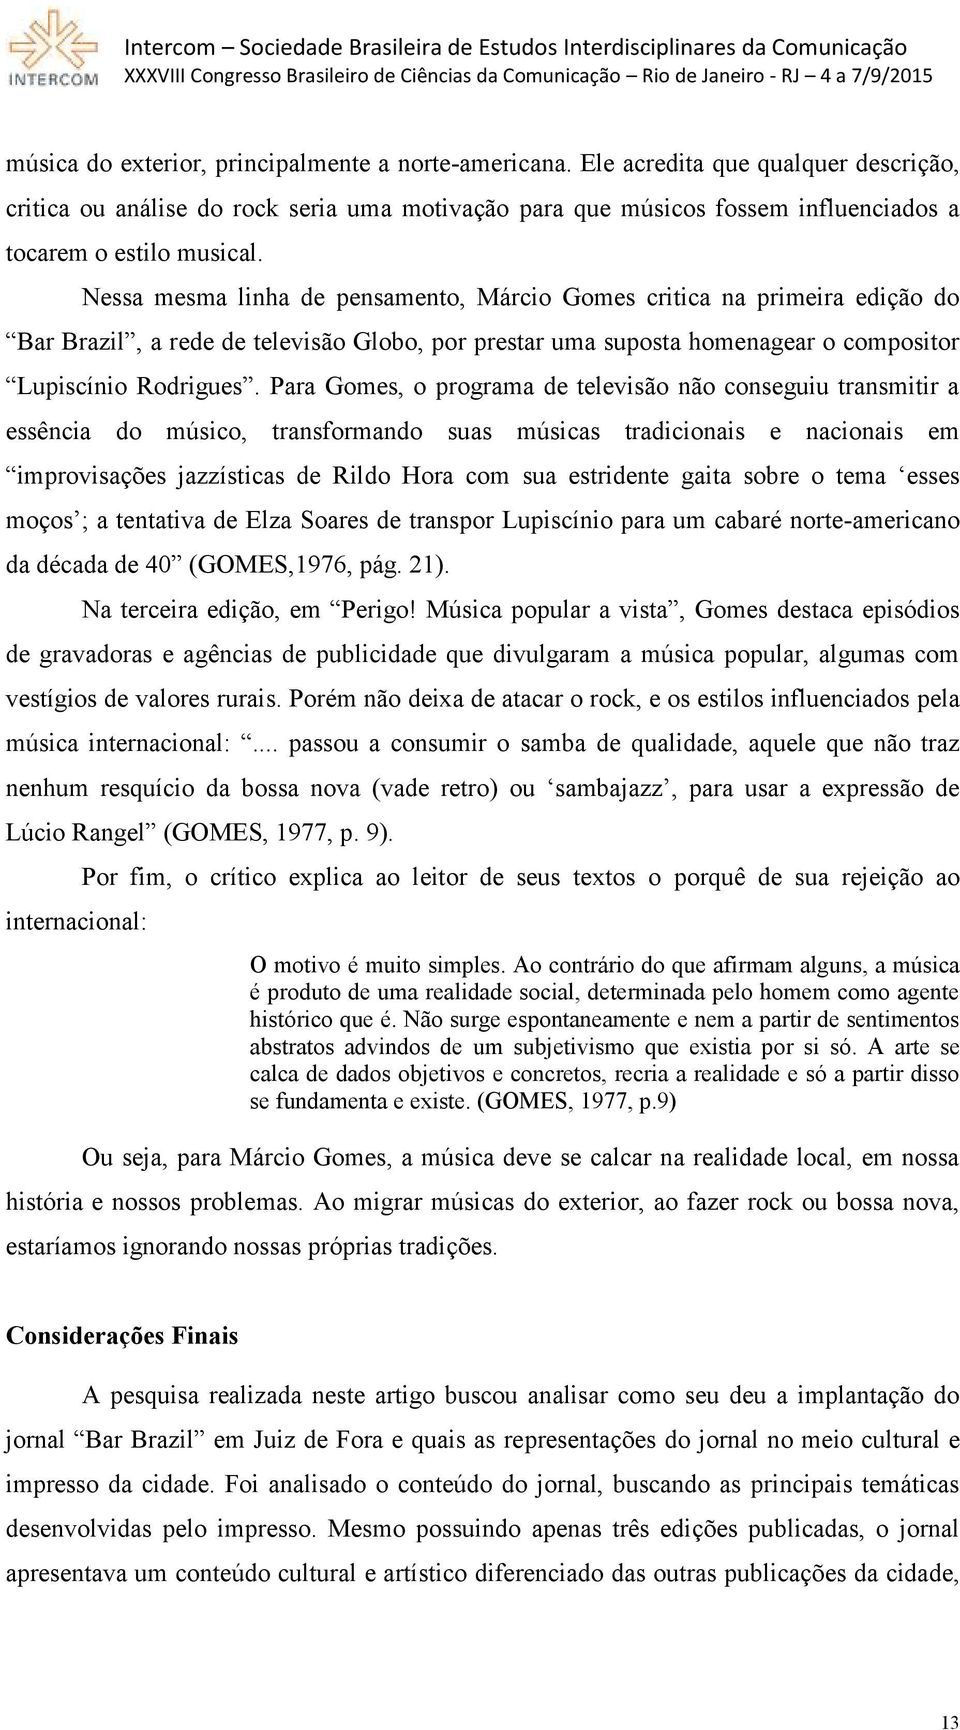 Nessa mesma linha de pensamento, Márcio Gomes critica na primeira edição do Bar Brazil, a rede de televisão Globo, por prestar uma suposta homenagear o compositor Lupiscínio Rodrigues.